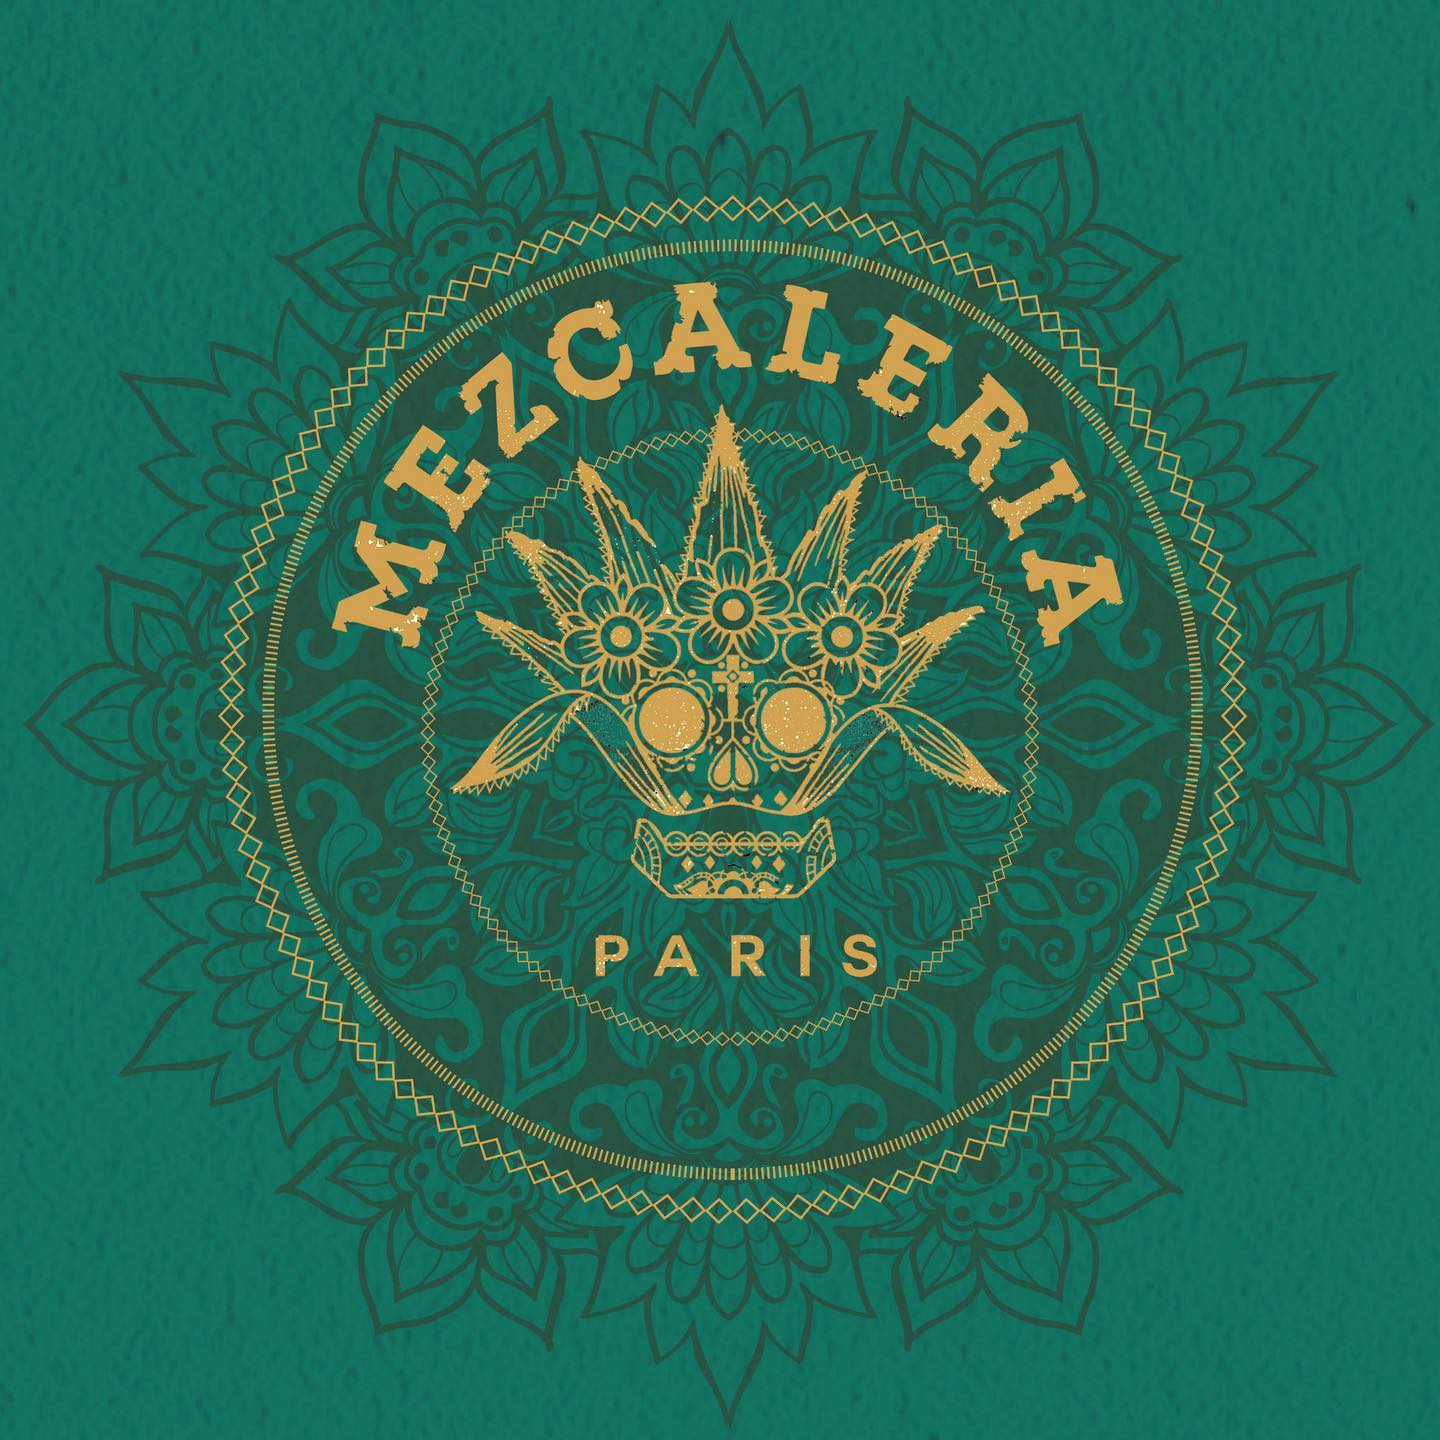 La Mezcaleria Paris revient avec un nouveau menu : "Apapacho De Los Dioses", le câlin des dieux